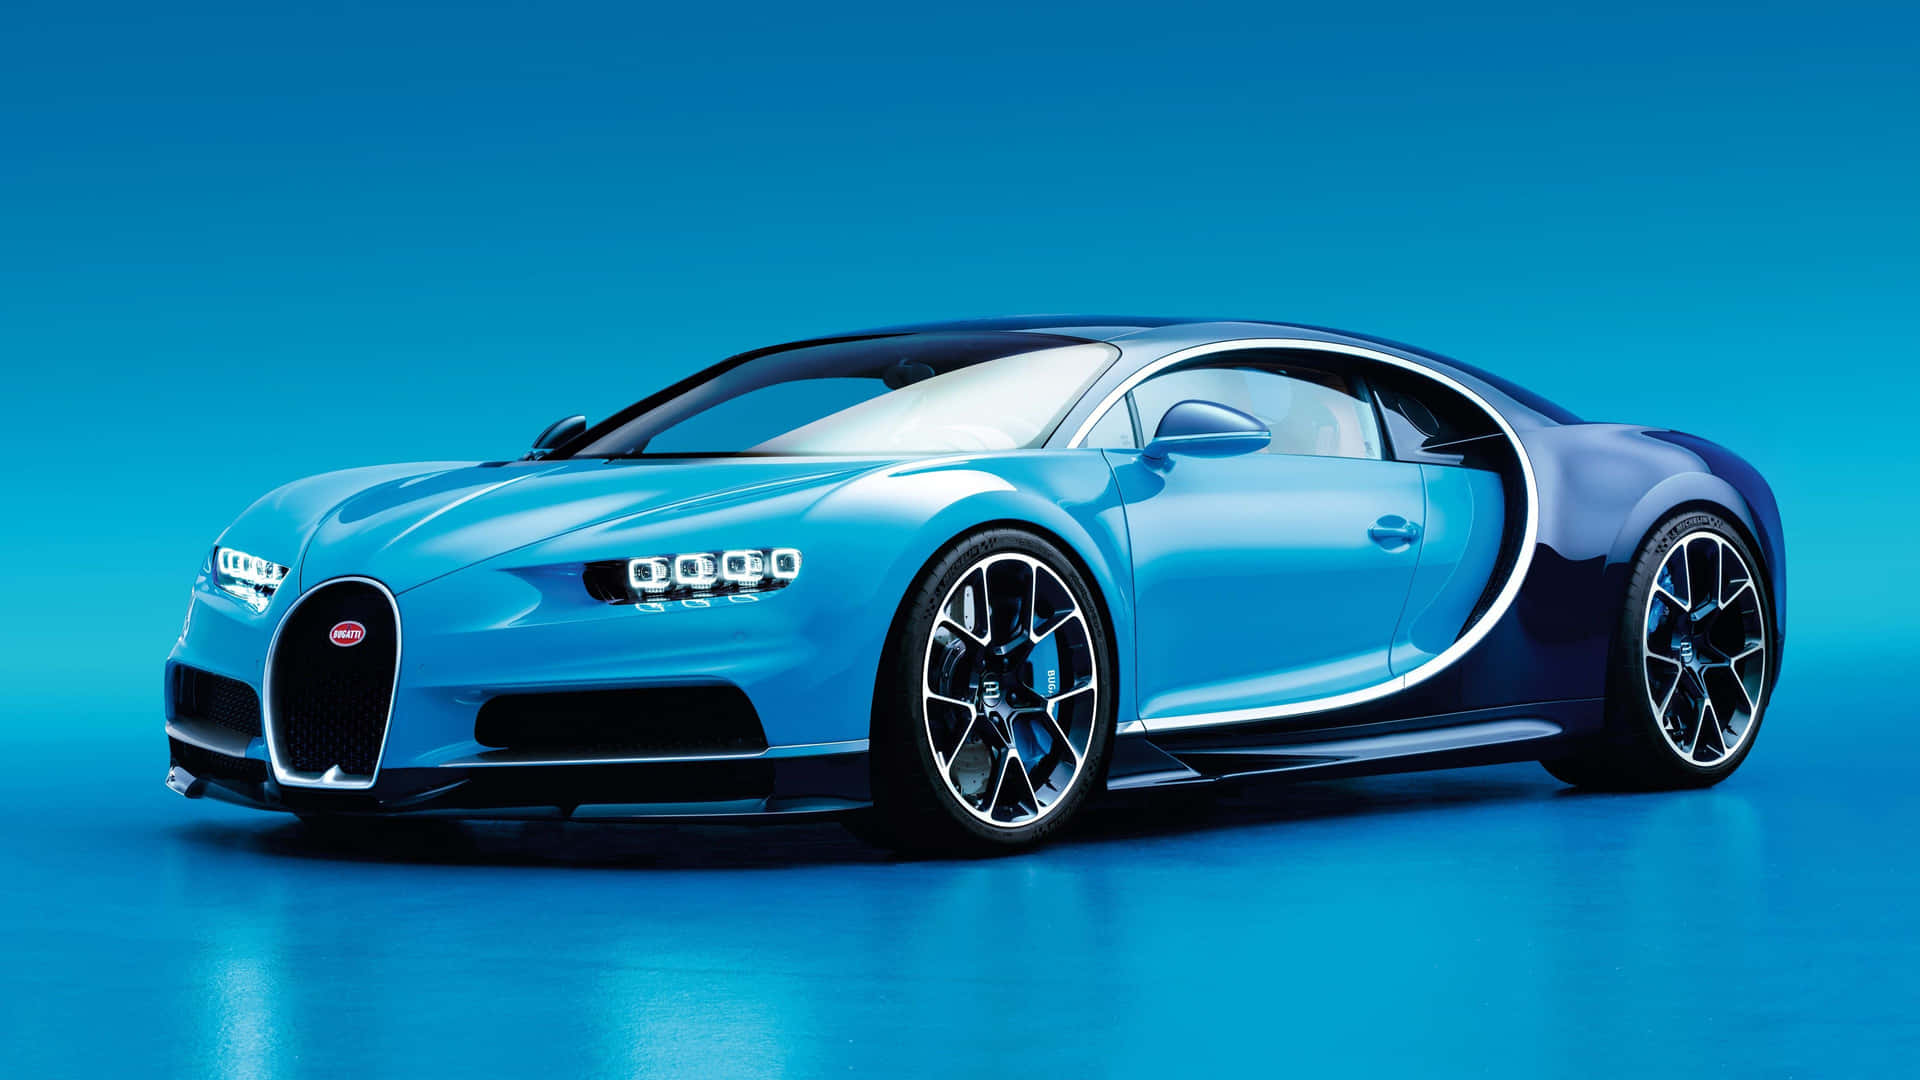 Stig op over grænsen og se den imponerende Bugatti 4K. Wallpaper